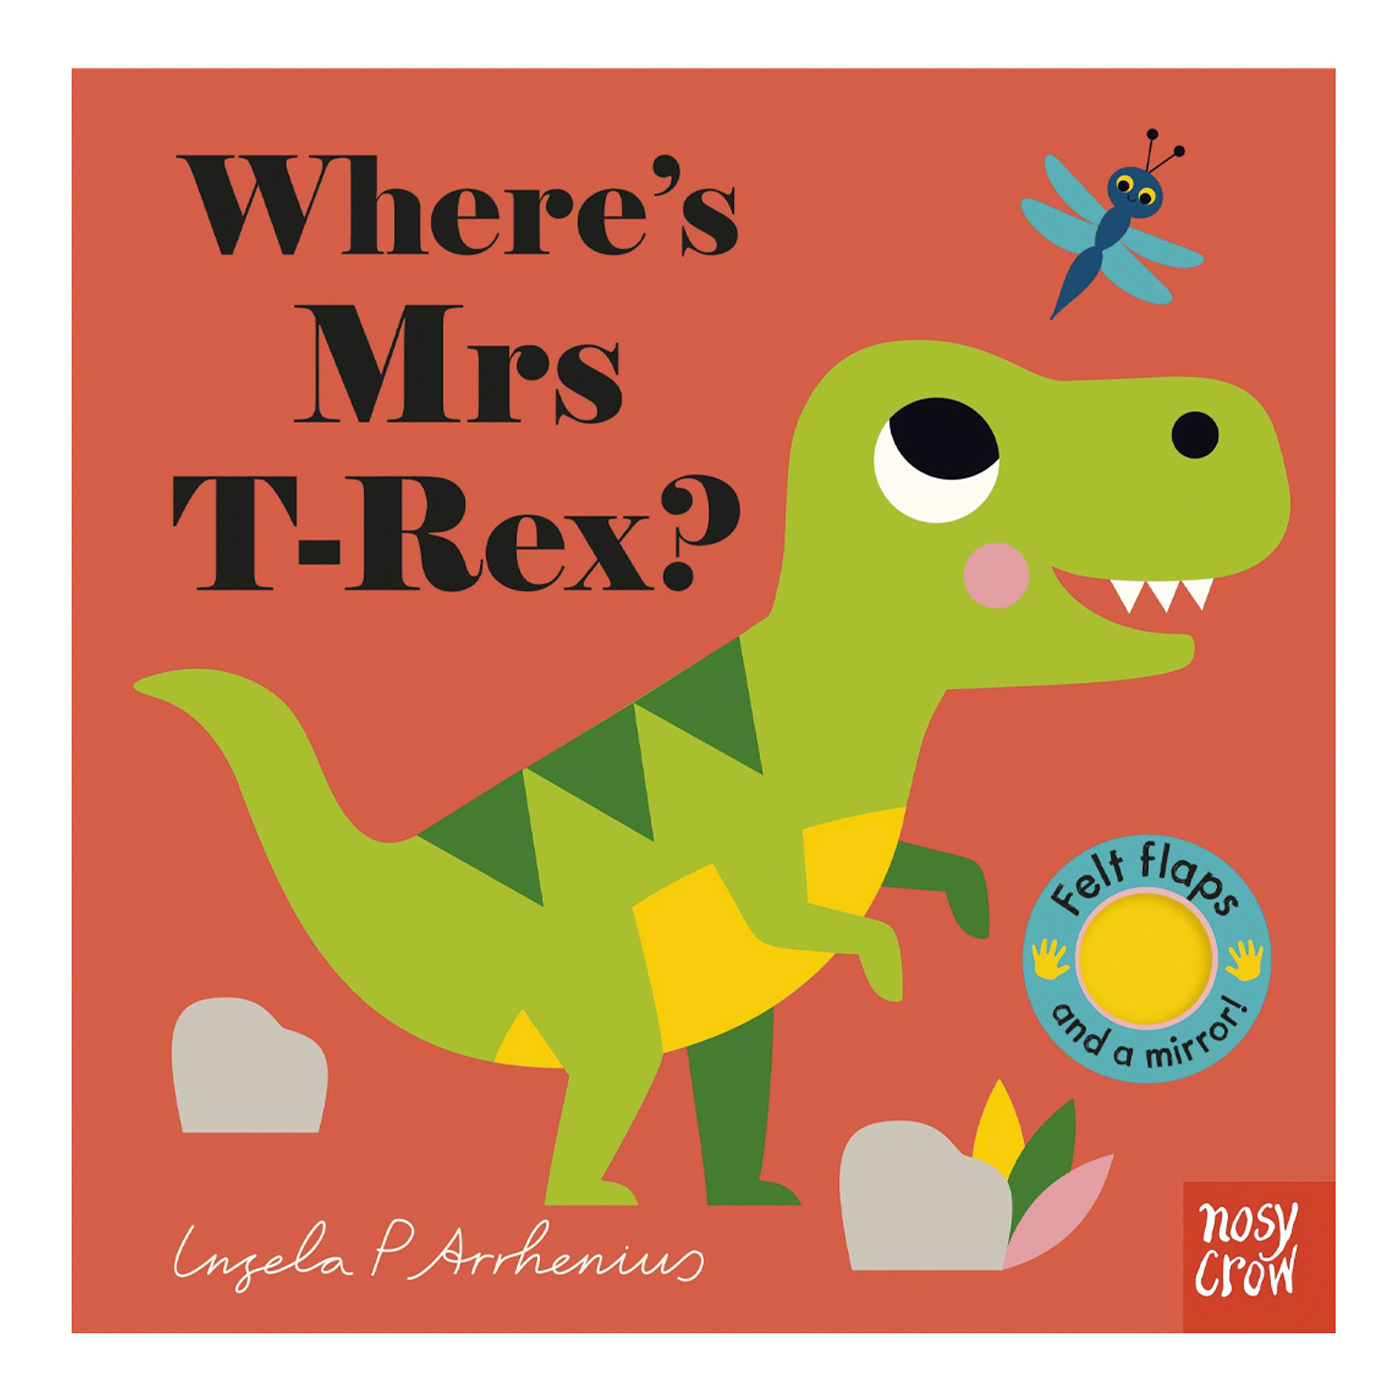  Where’s Mrs T-Rex?